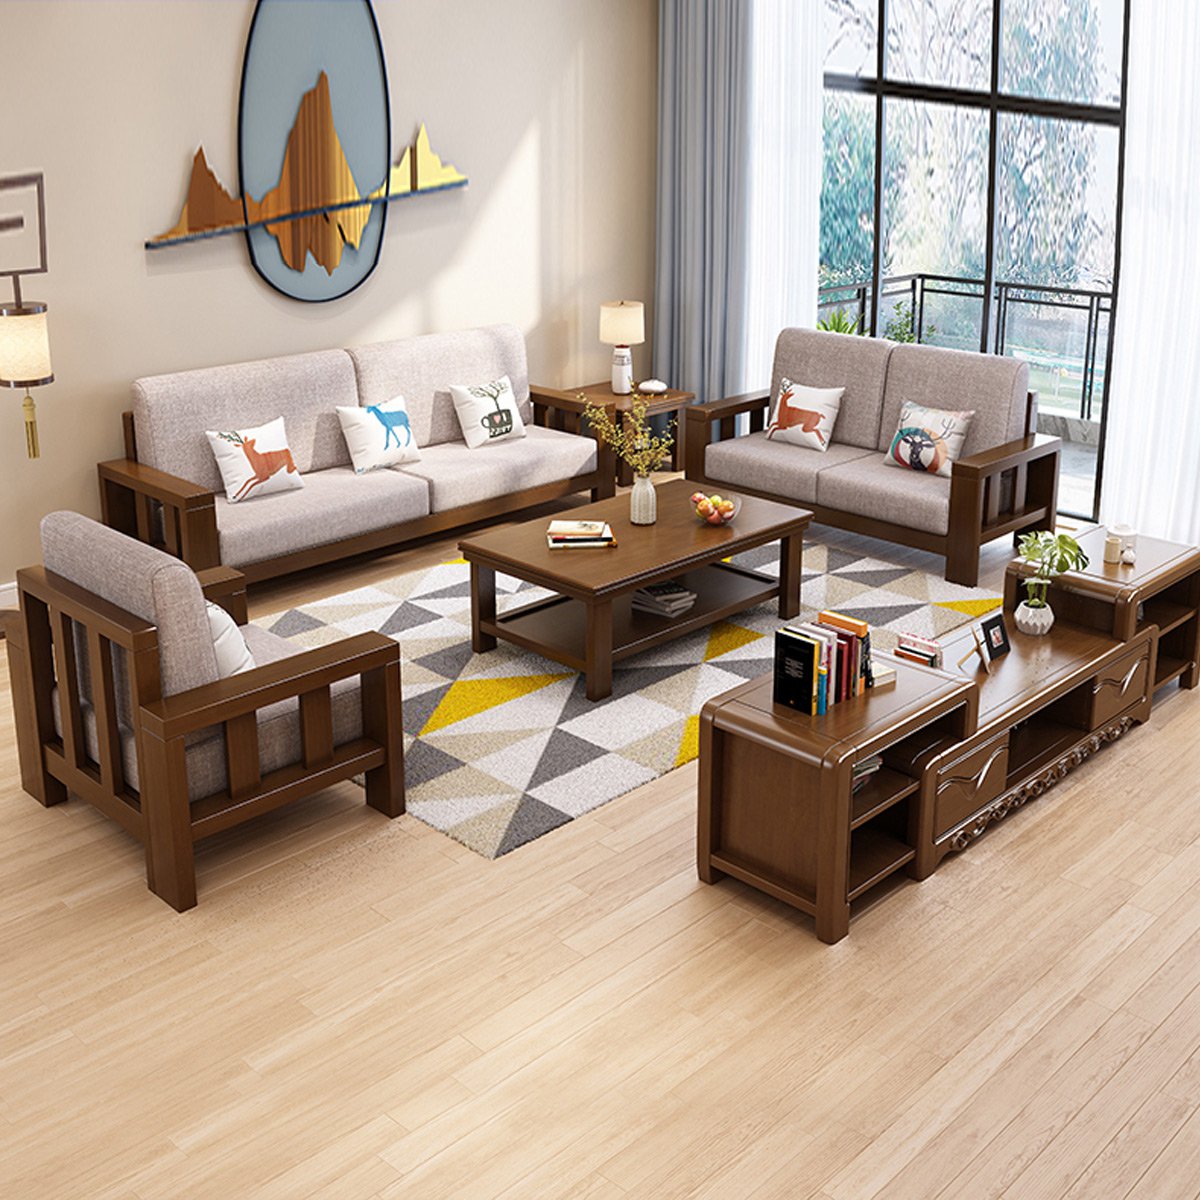 新中式全实木沙发组合 现代简约布艺沙发客厅三人位纯实木家具